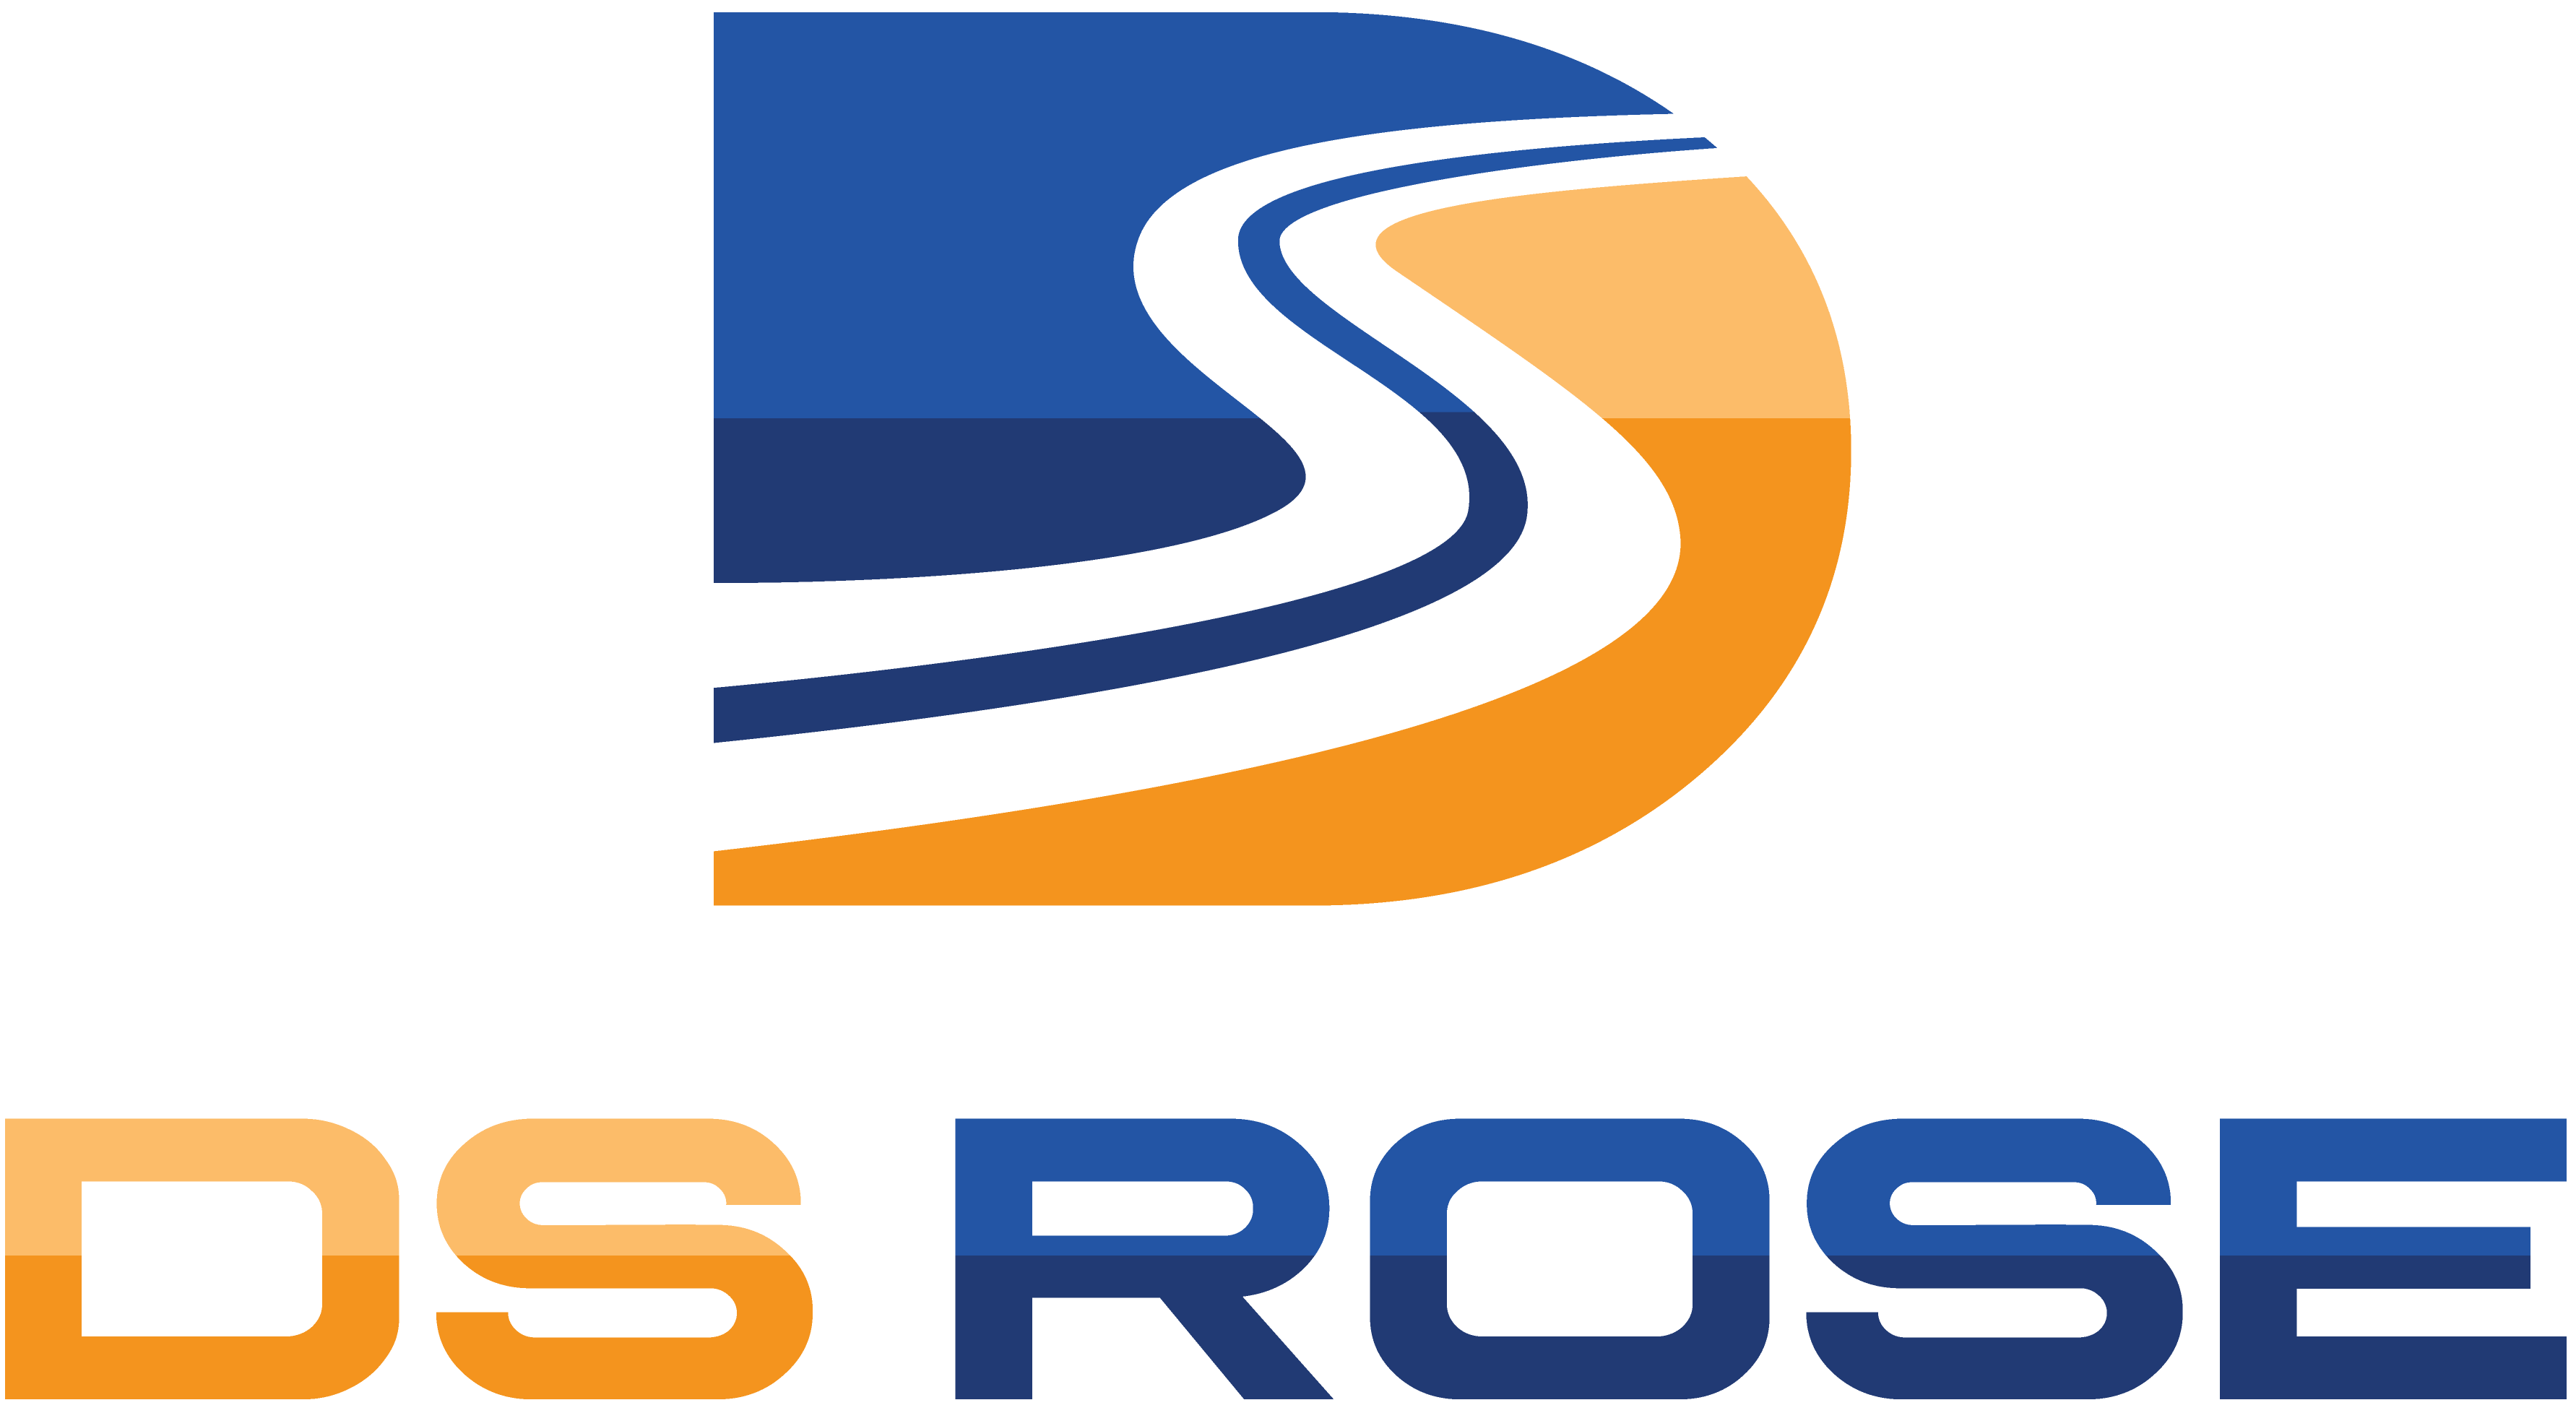 DS Rose, Inc.